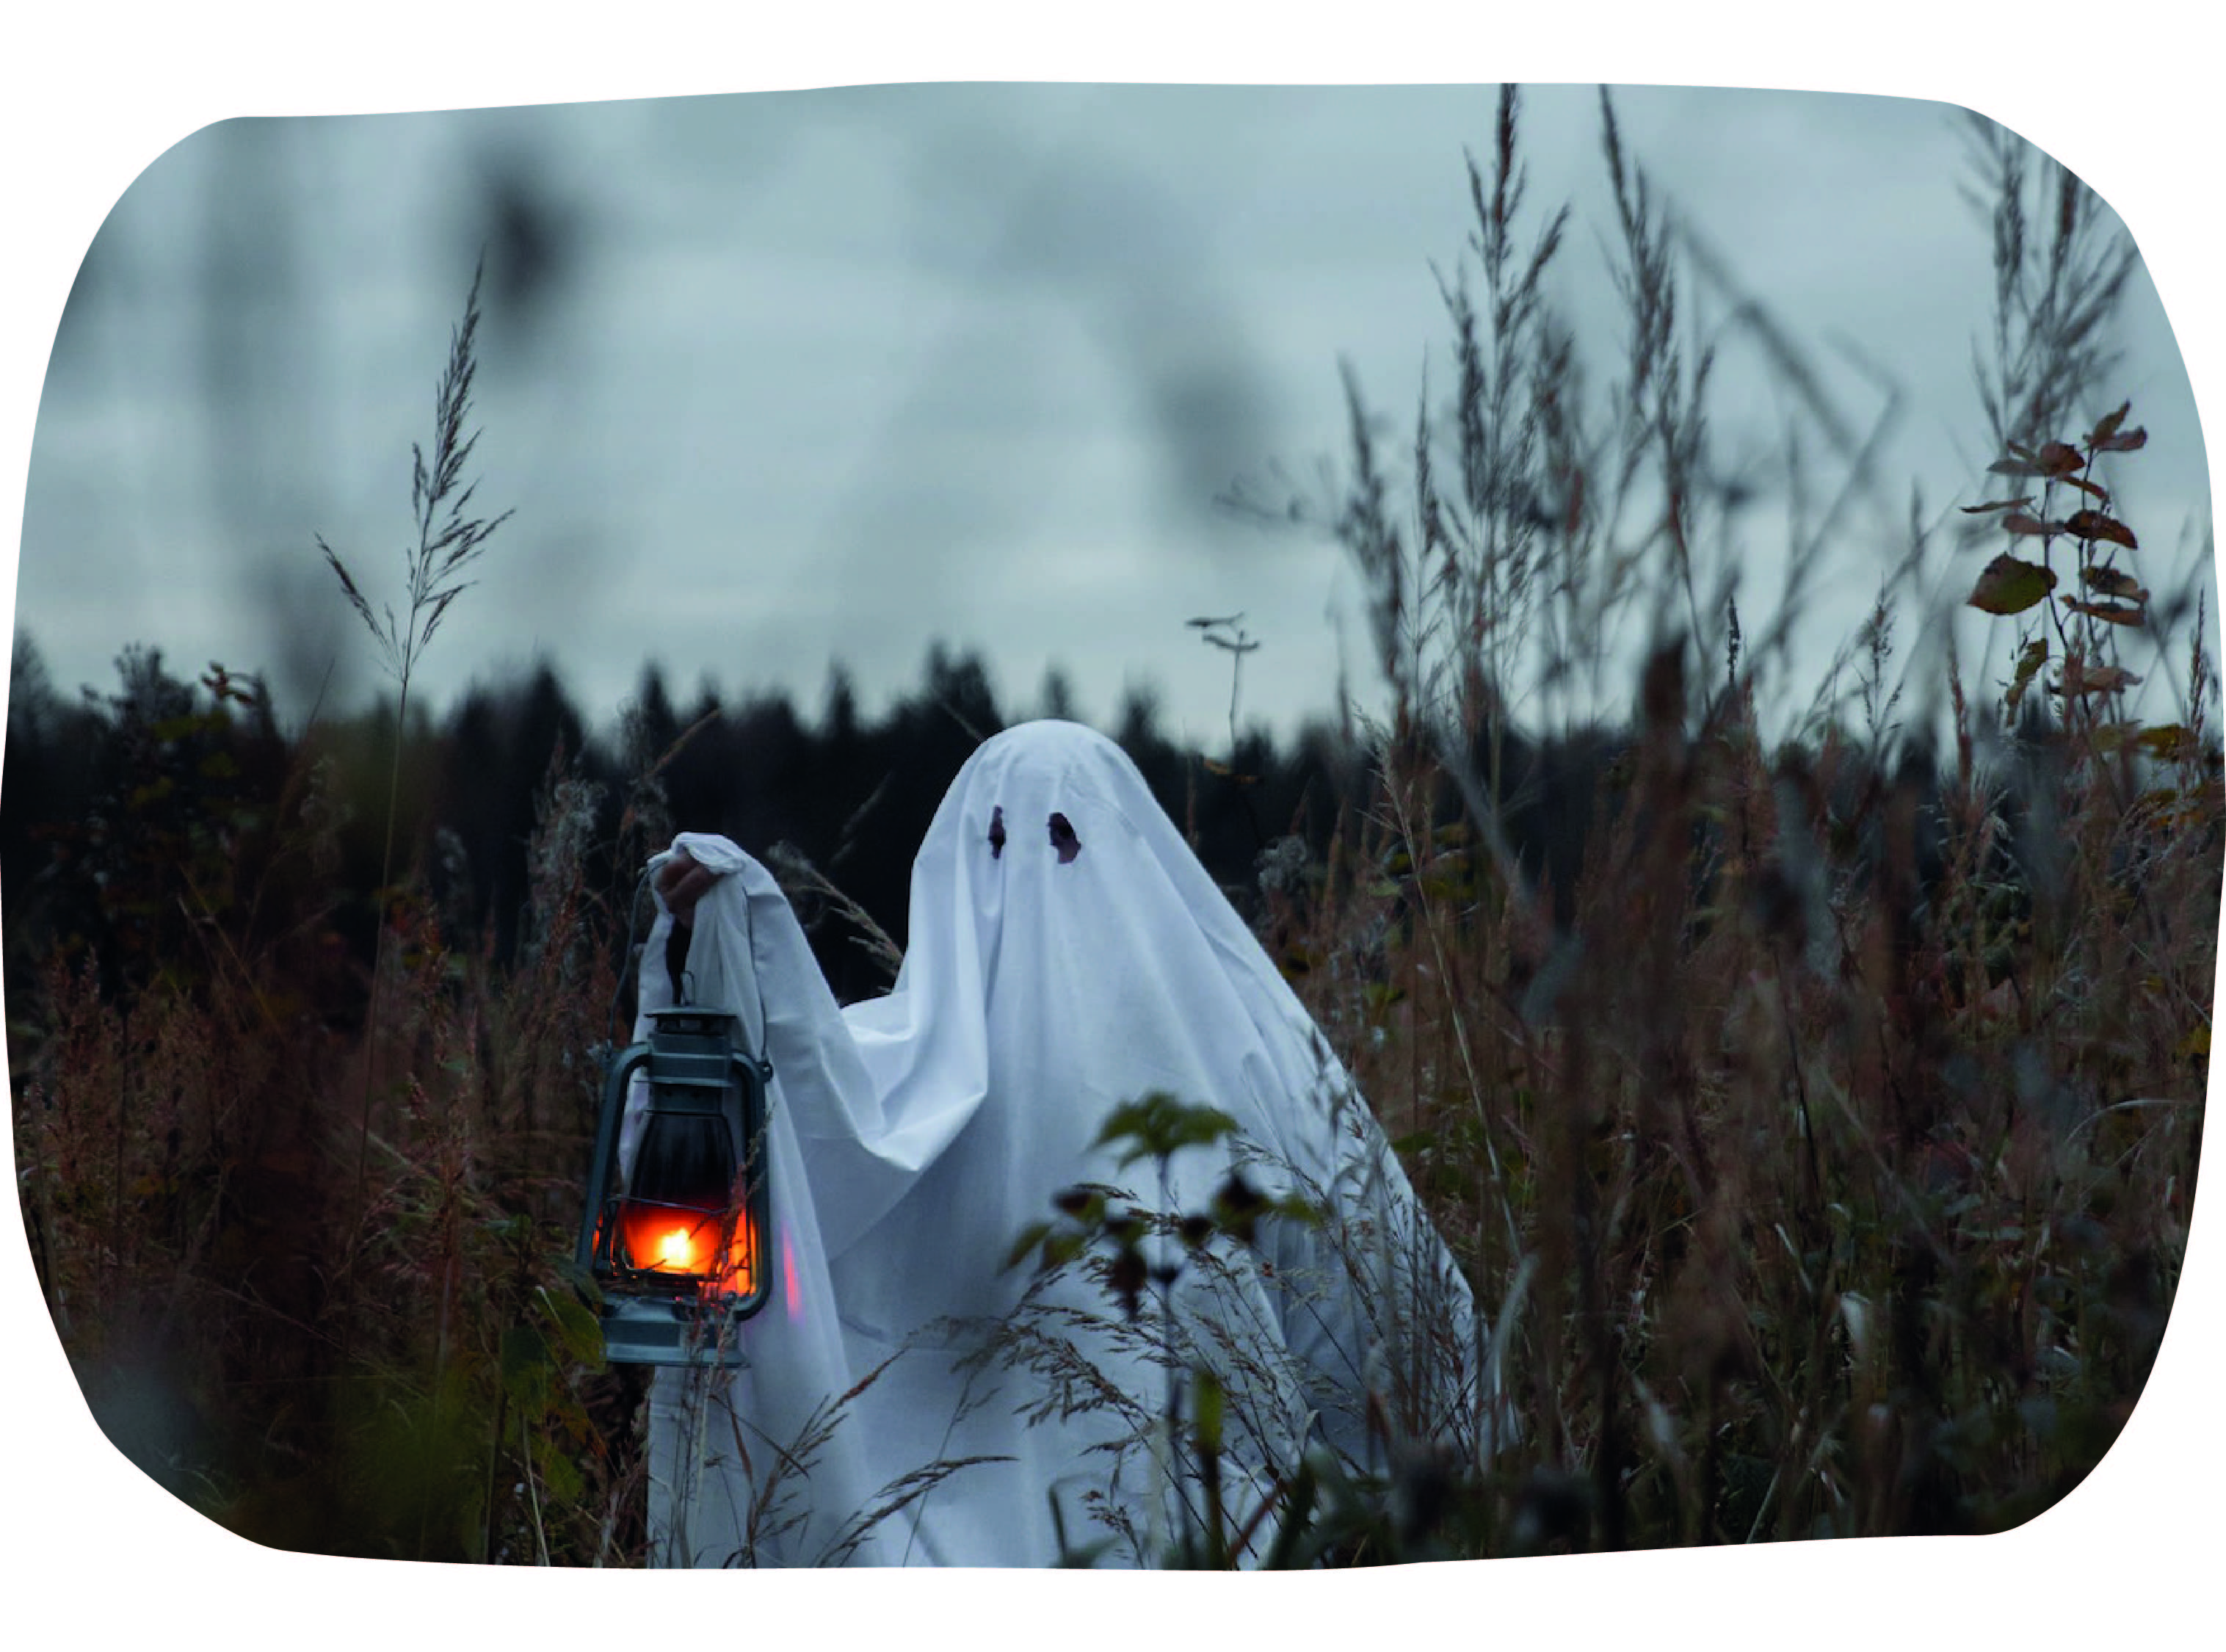 Fantôme halloween frissons aventure visite cimetière connus de paris france